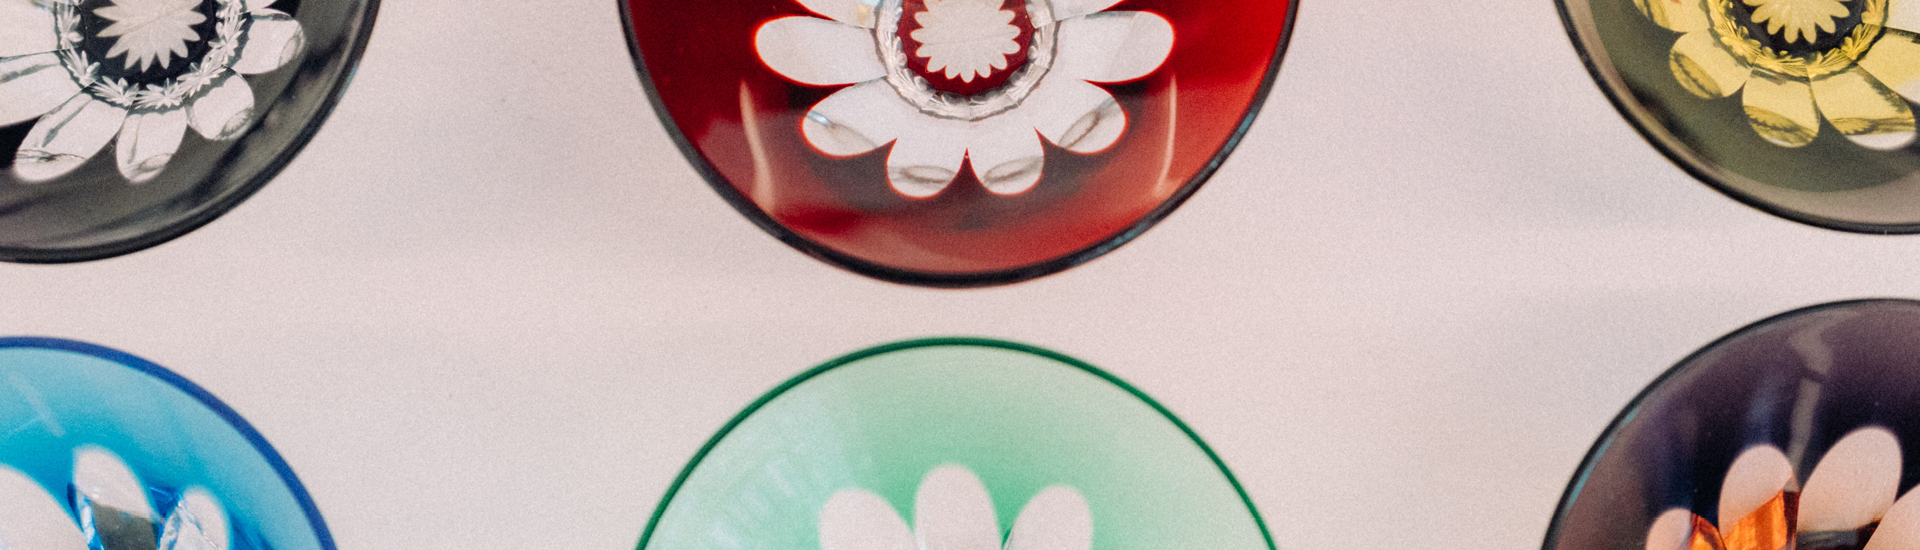 Detalhes de peças de vidro coloridas da exposição Sopros.